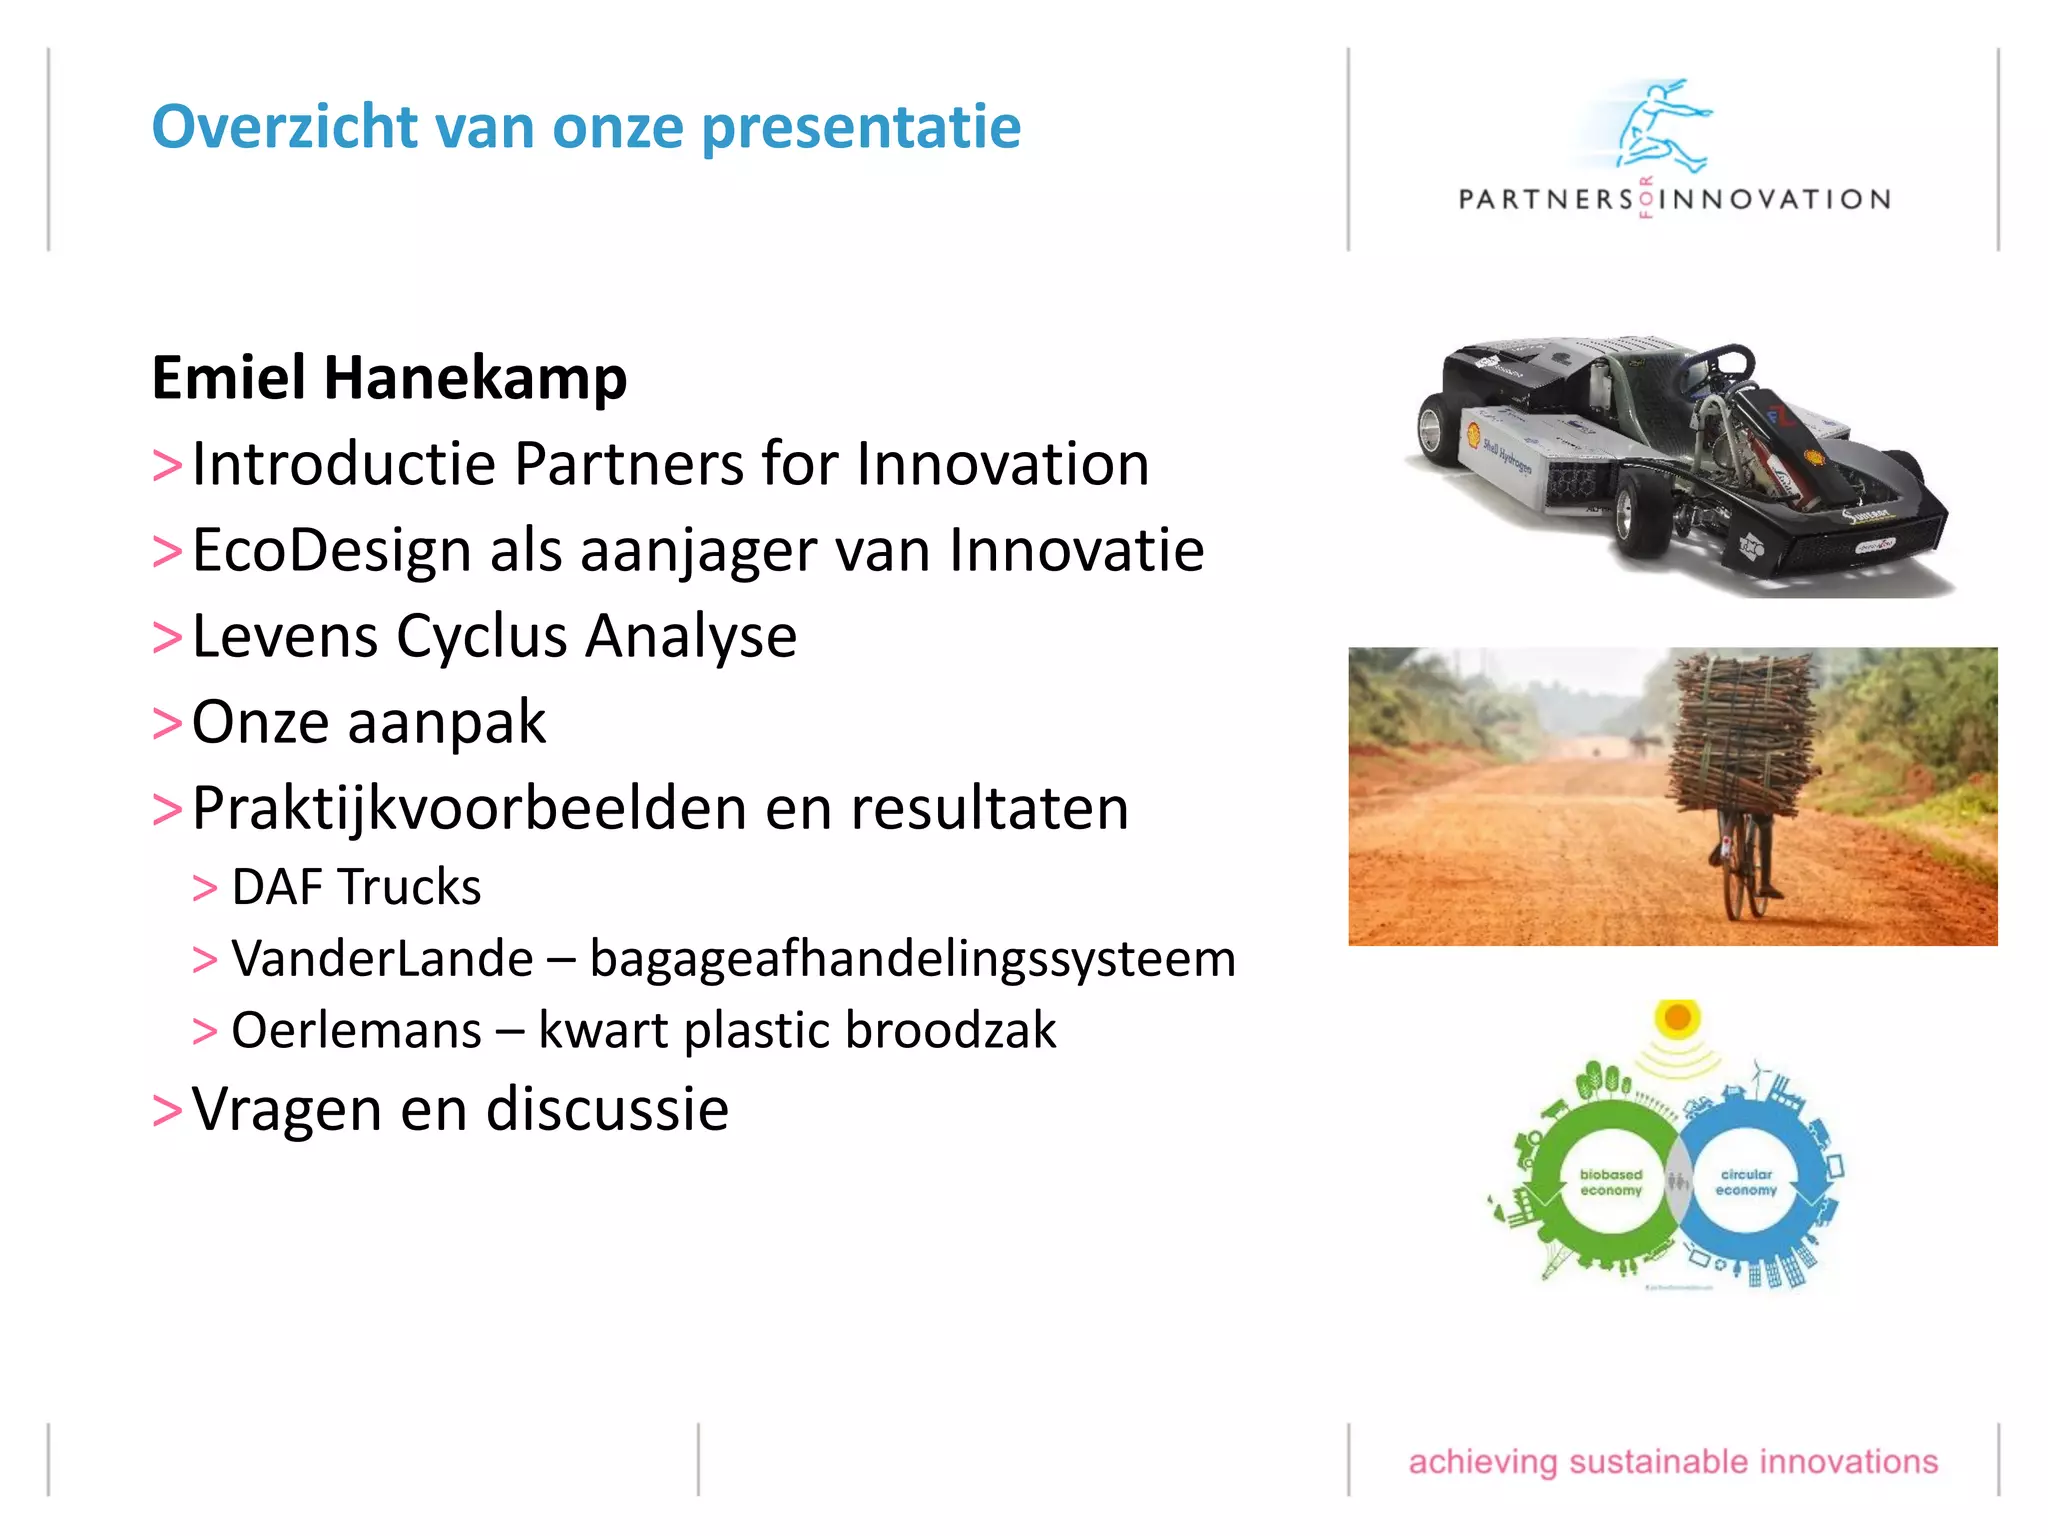 EcoDesign voorbeelden van Partners for Innovation